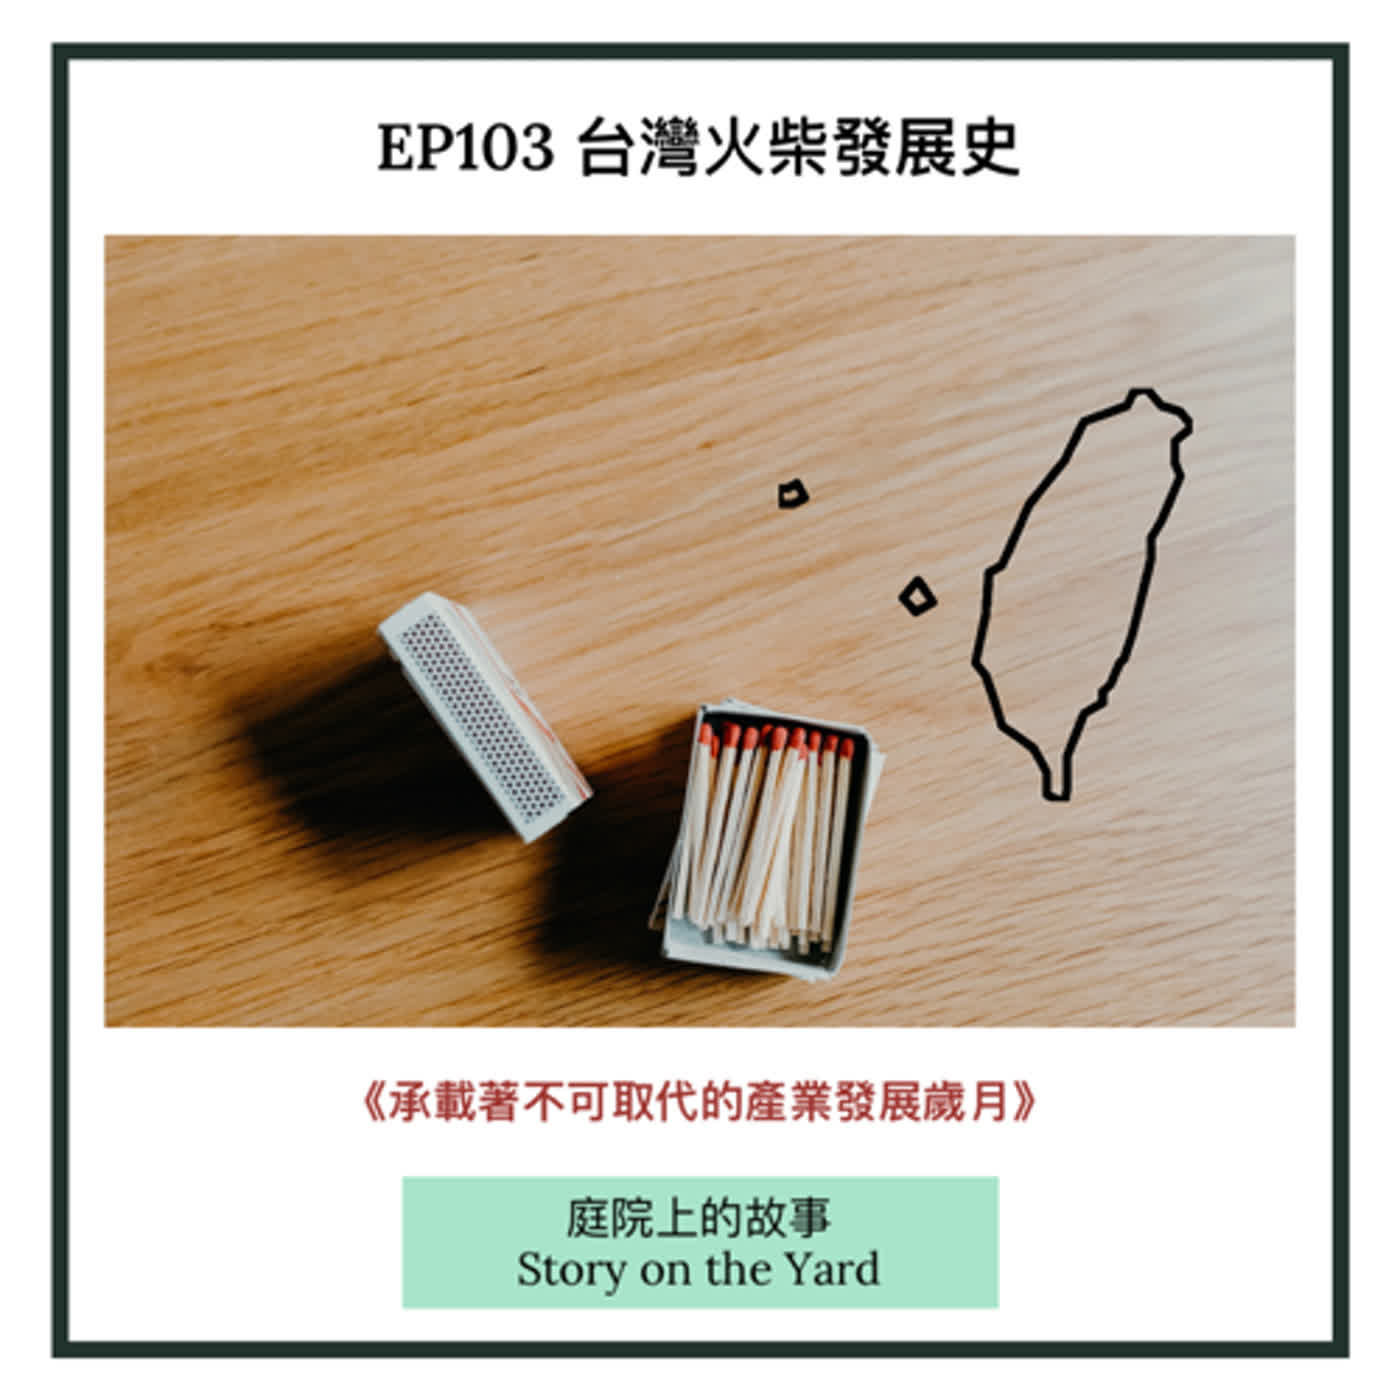 EP103 台灣火柴發展史《下集》